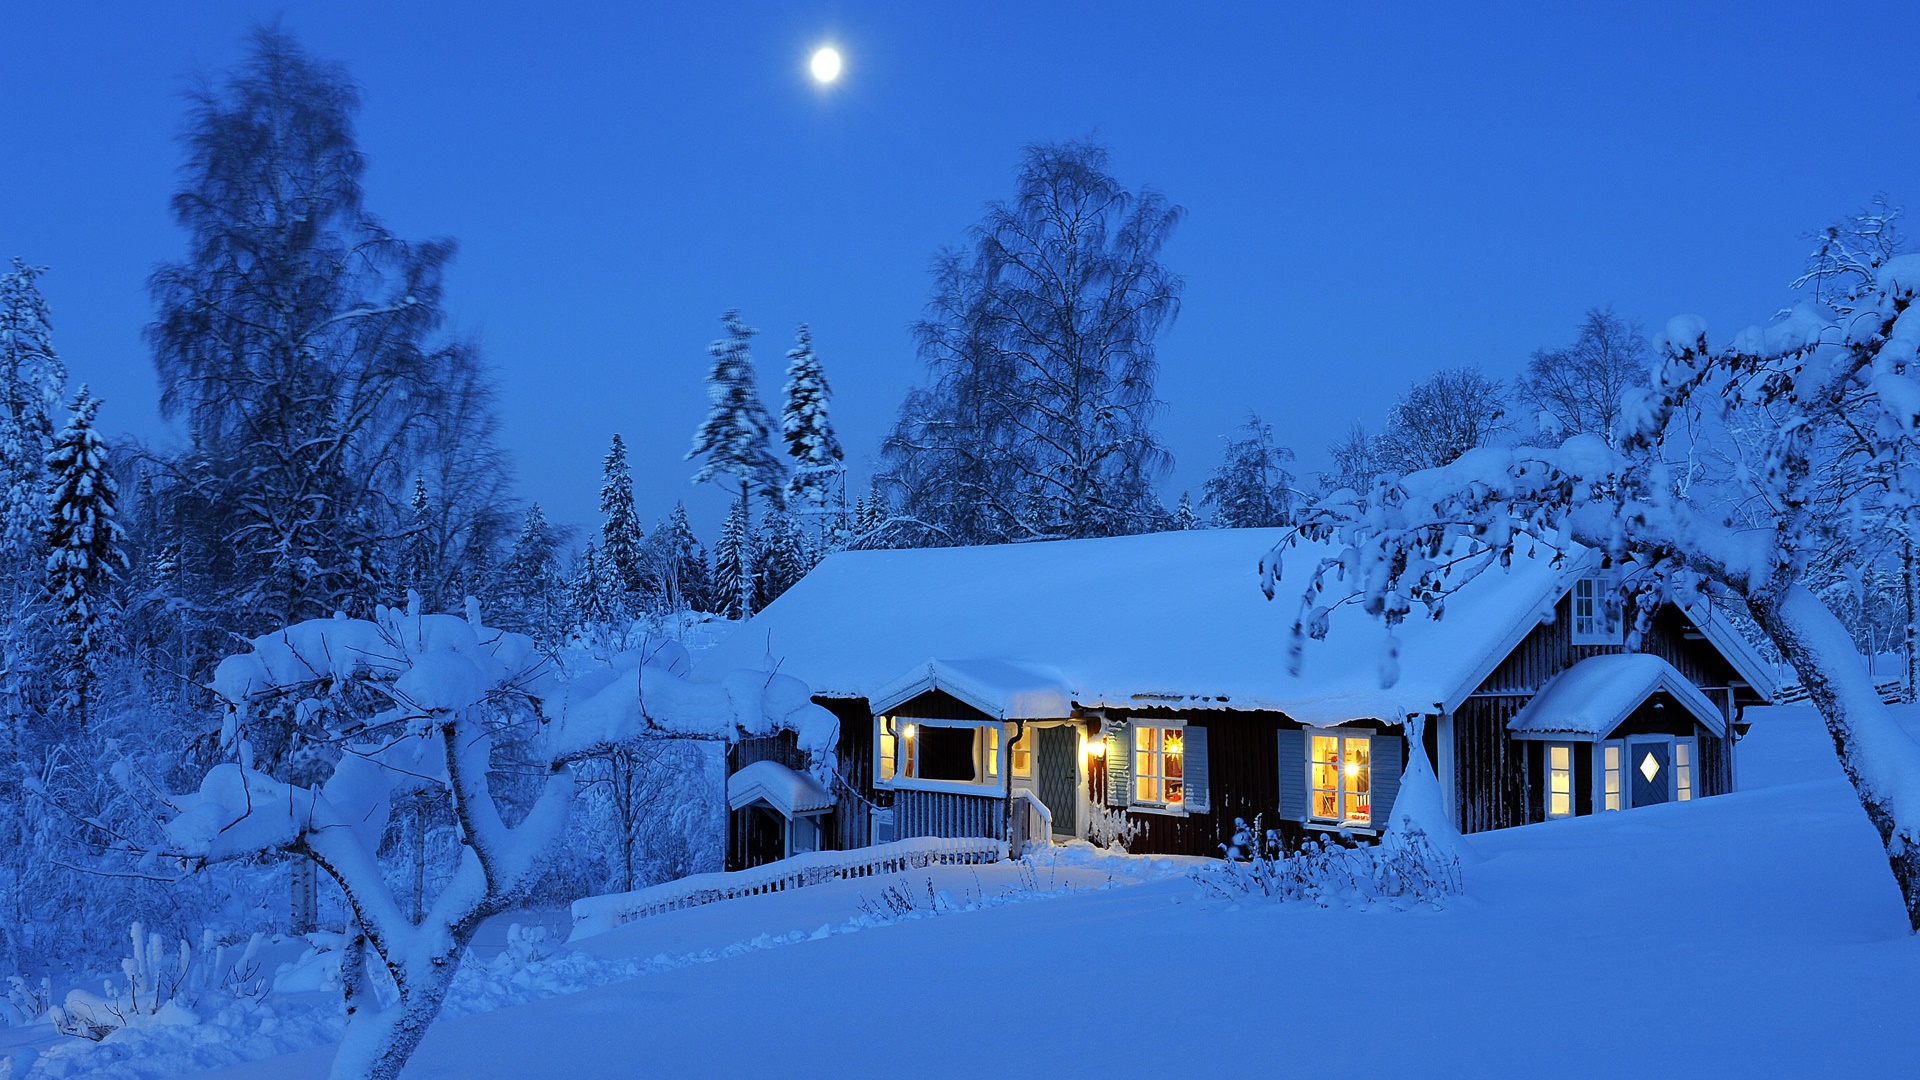 カントリーハウス 夜 冬 雪 月 ダーラナ スウェーデン デスクトップの壁紙 19x1080 壁紙をダウンロード Ja Hdwall365 Com